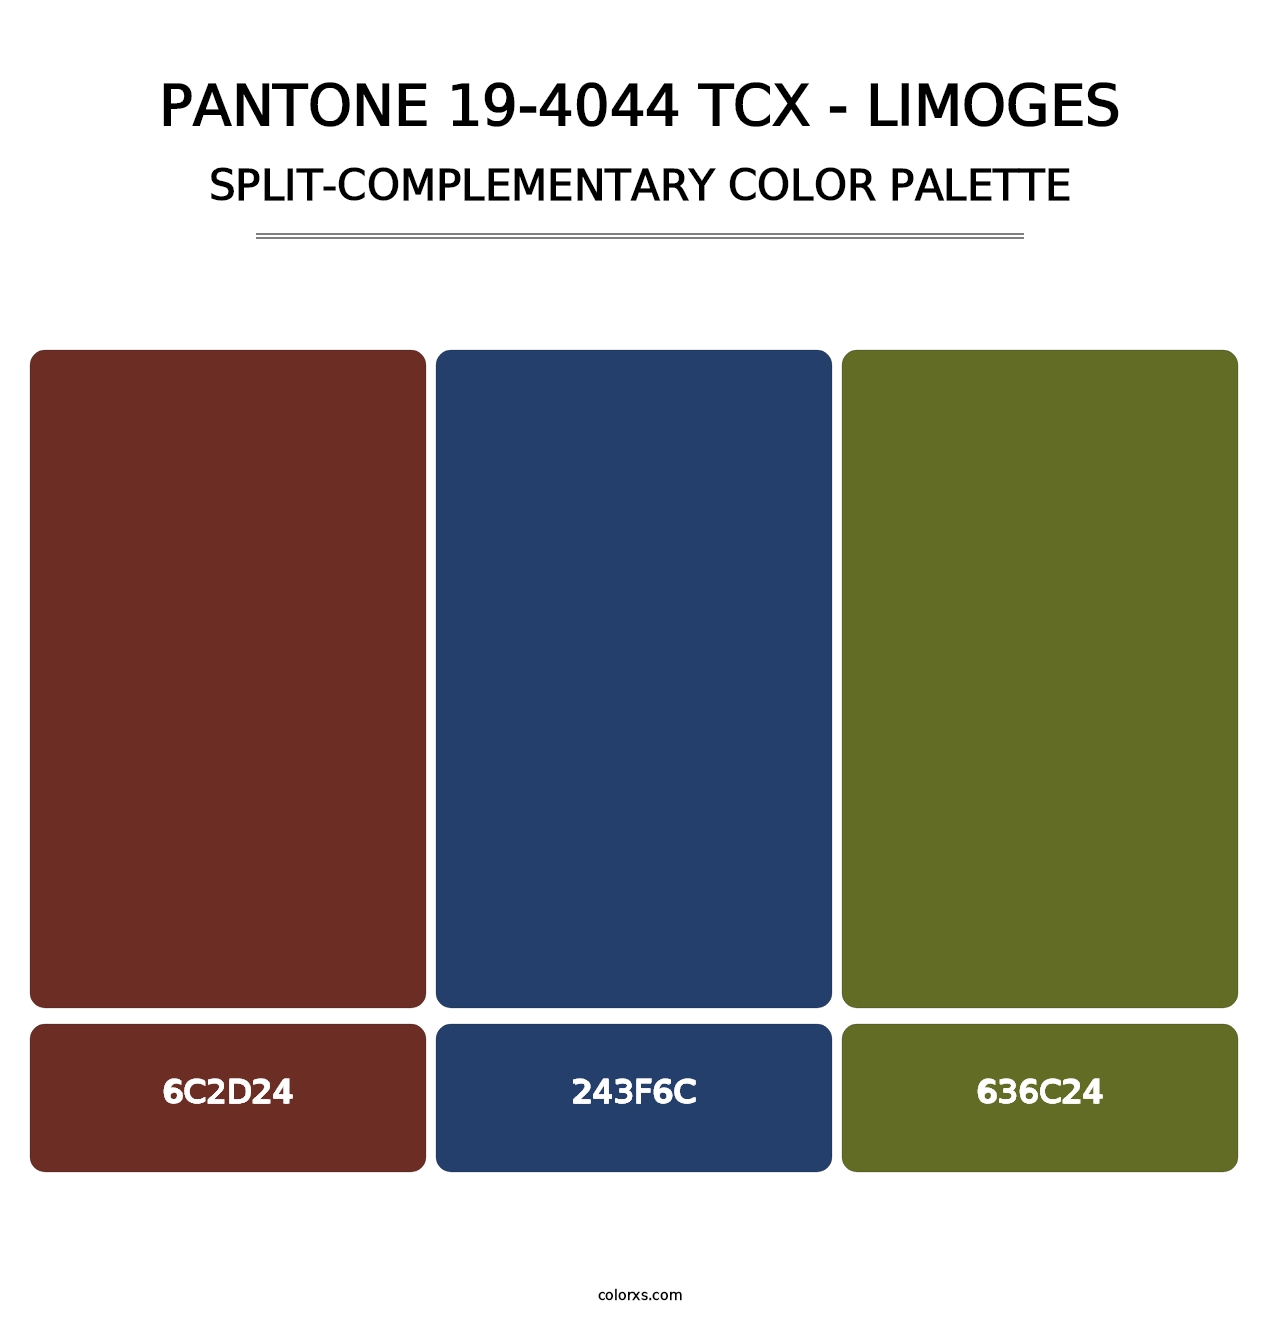 PANTONE 19-4044 TCX - Limoges - Split-Complementary Color Palette